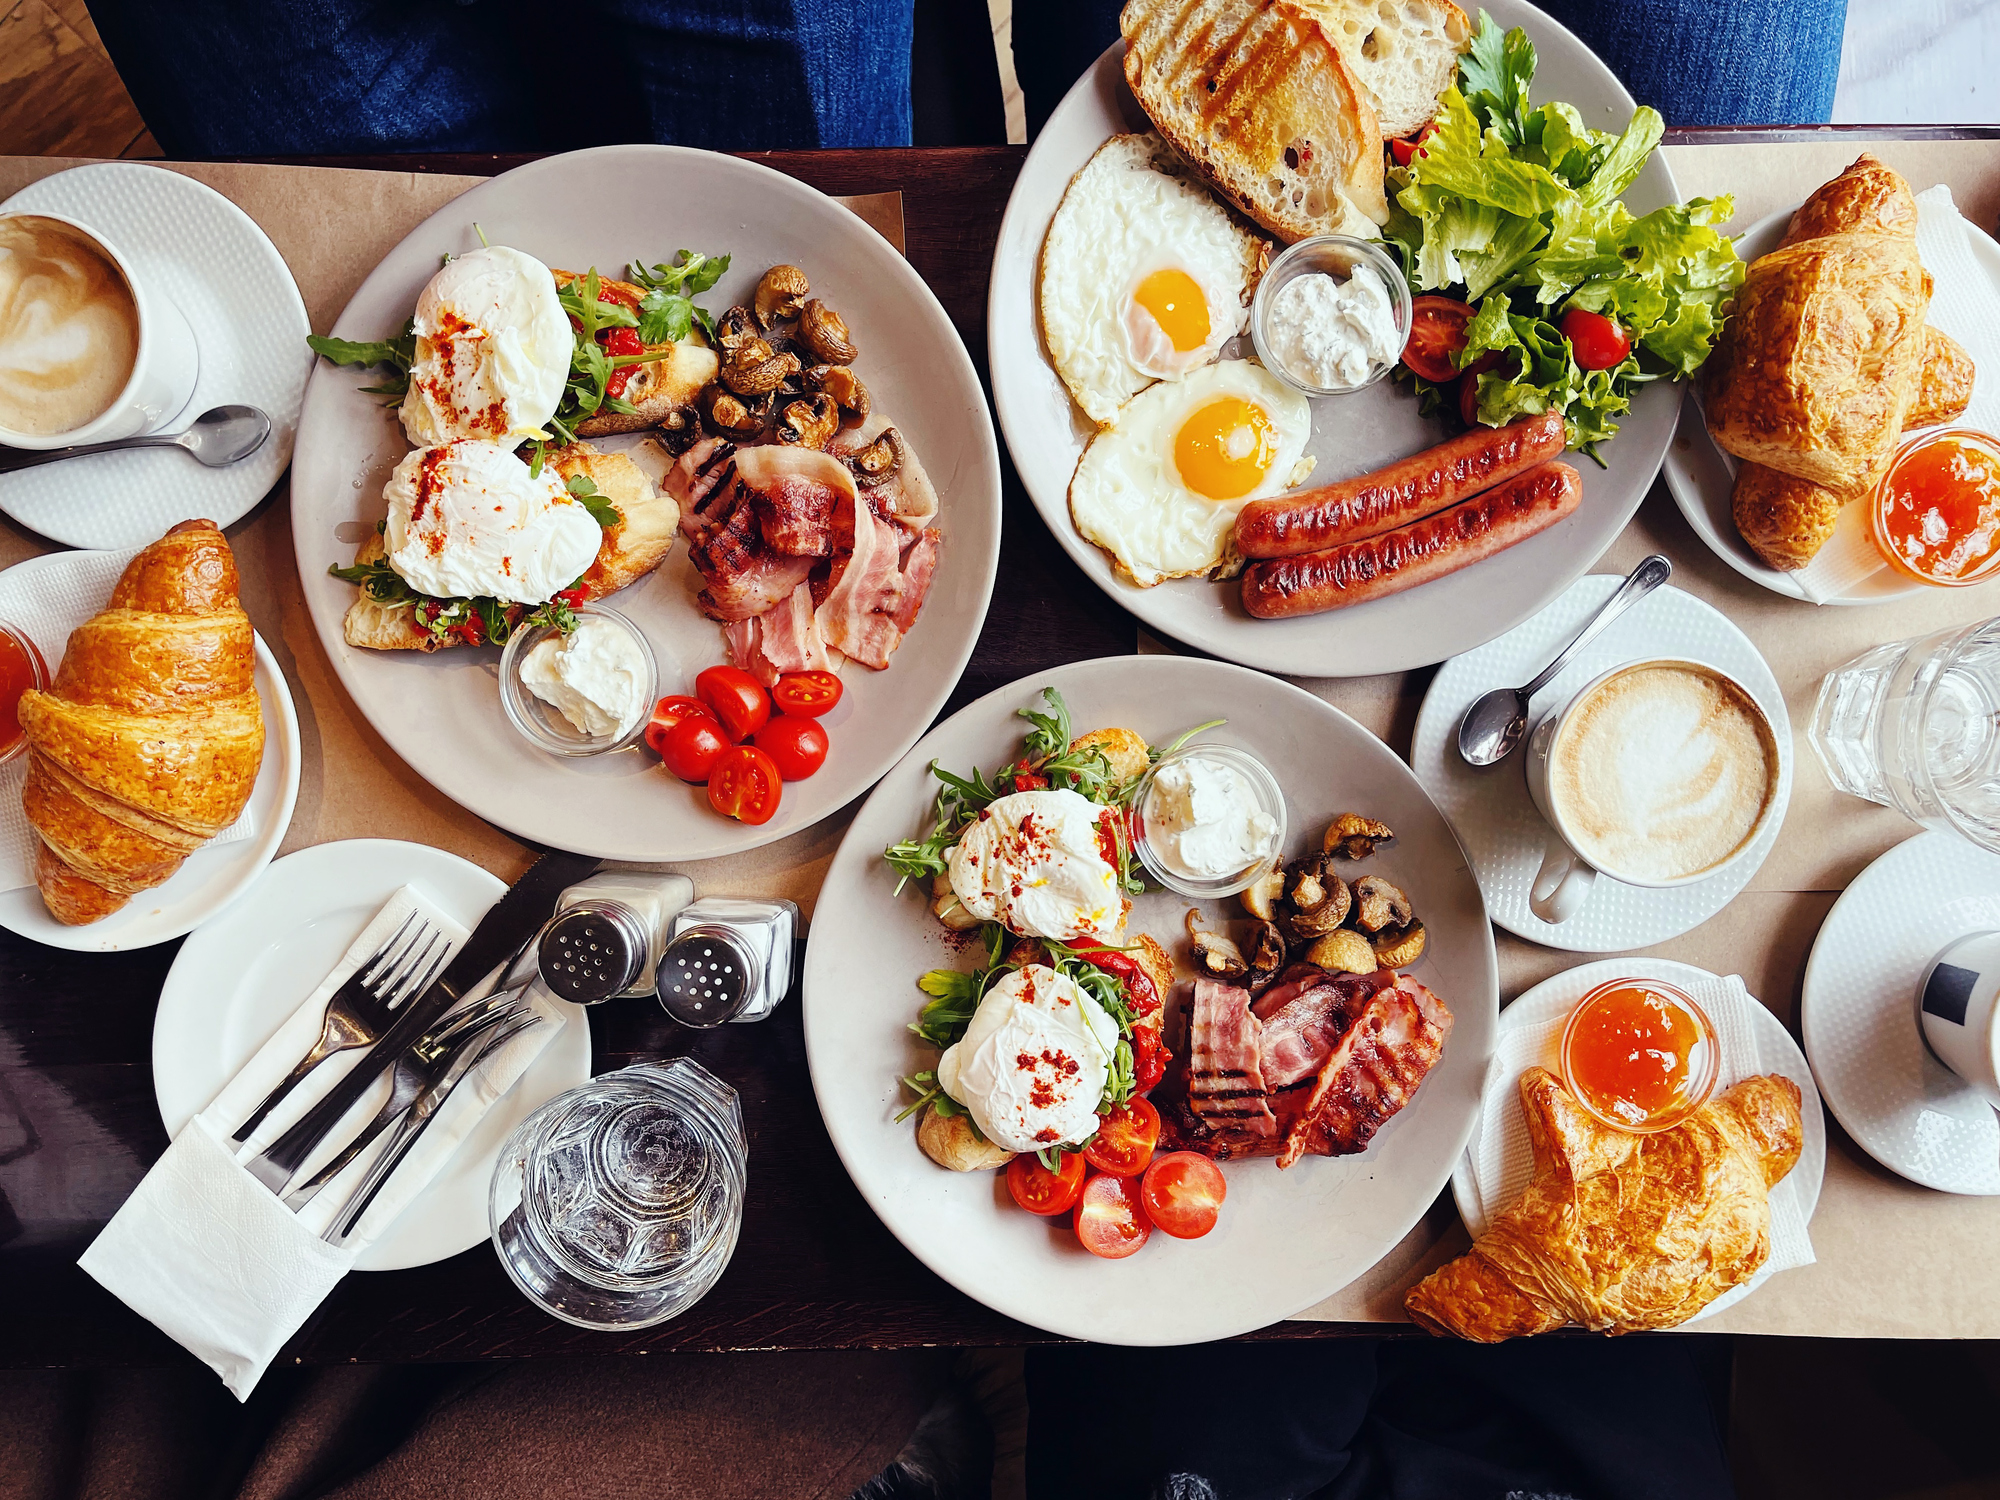 6 hely Budapesten, ahol tényleg úgy reggelizhetsz, mint egy király